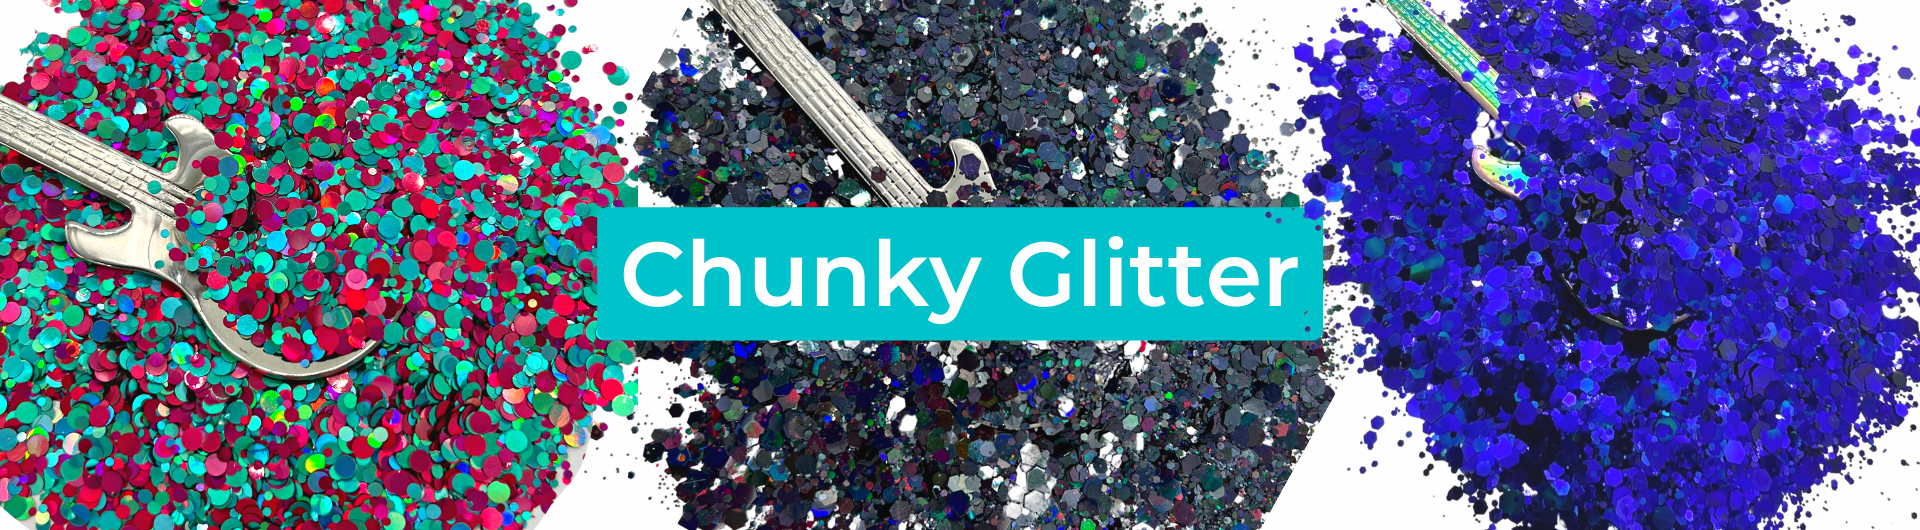 Chunky Glitter